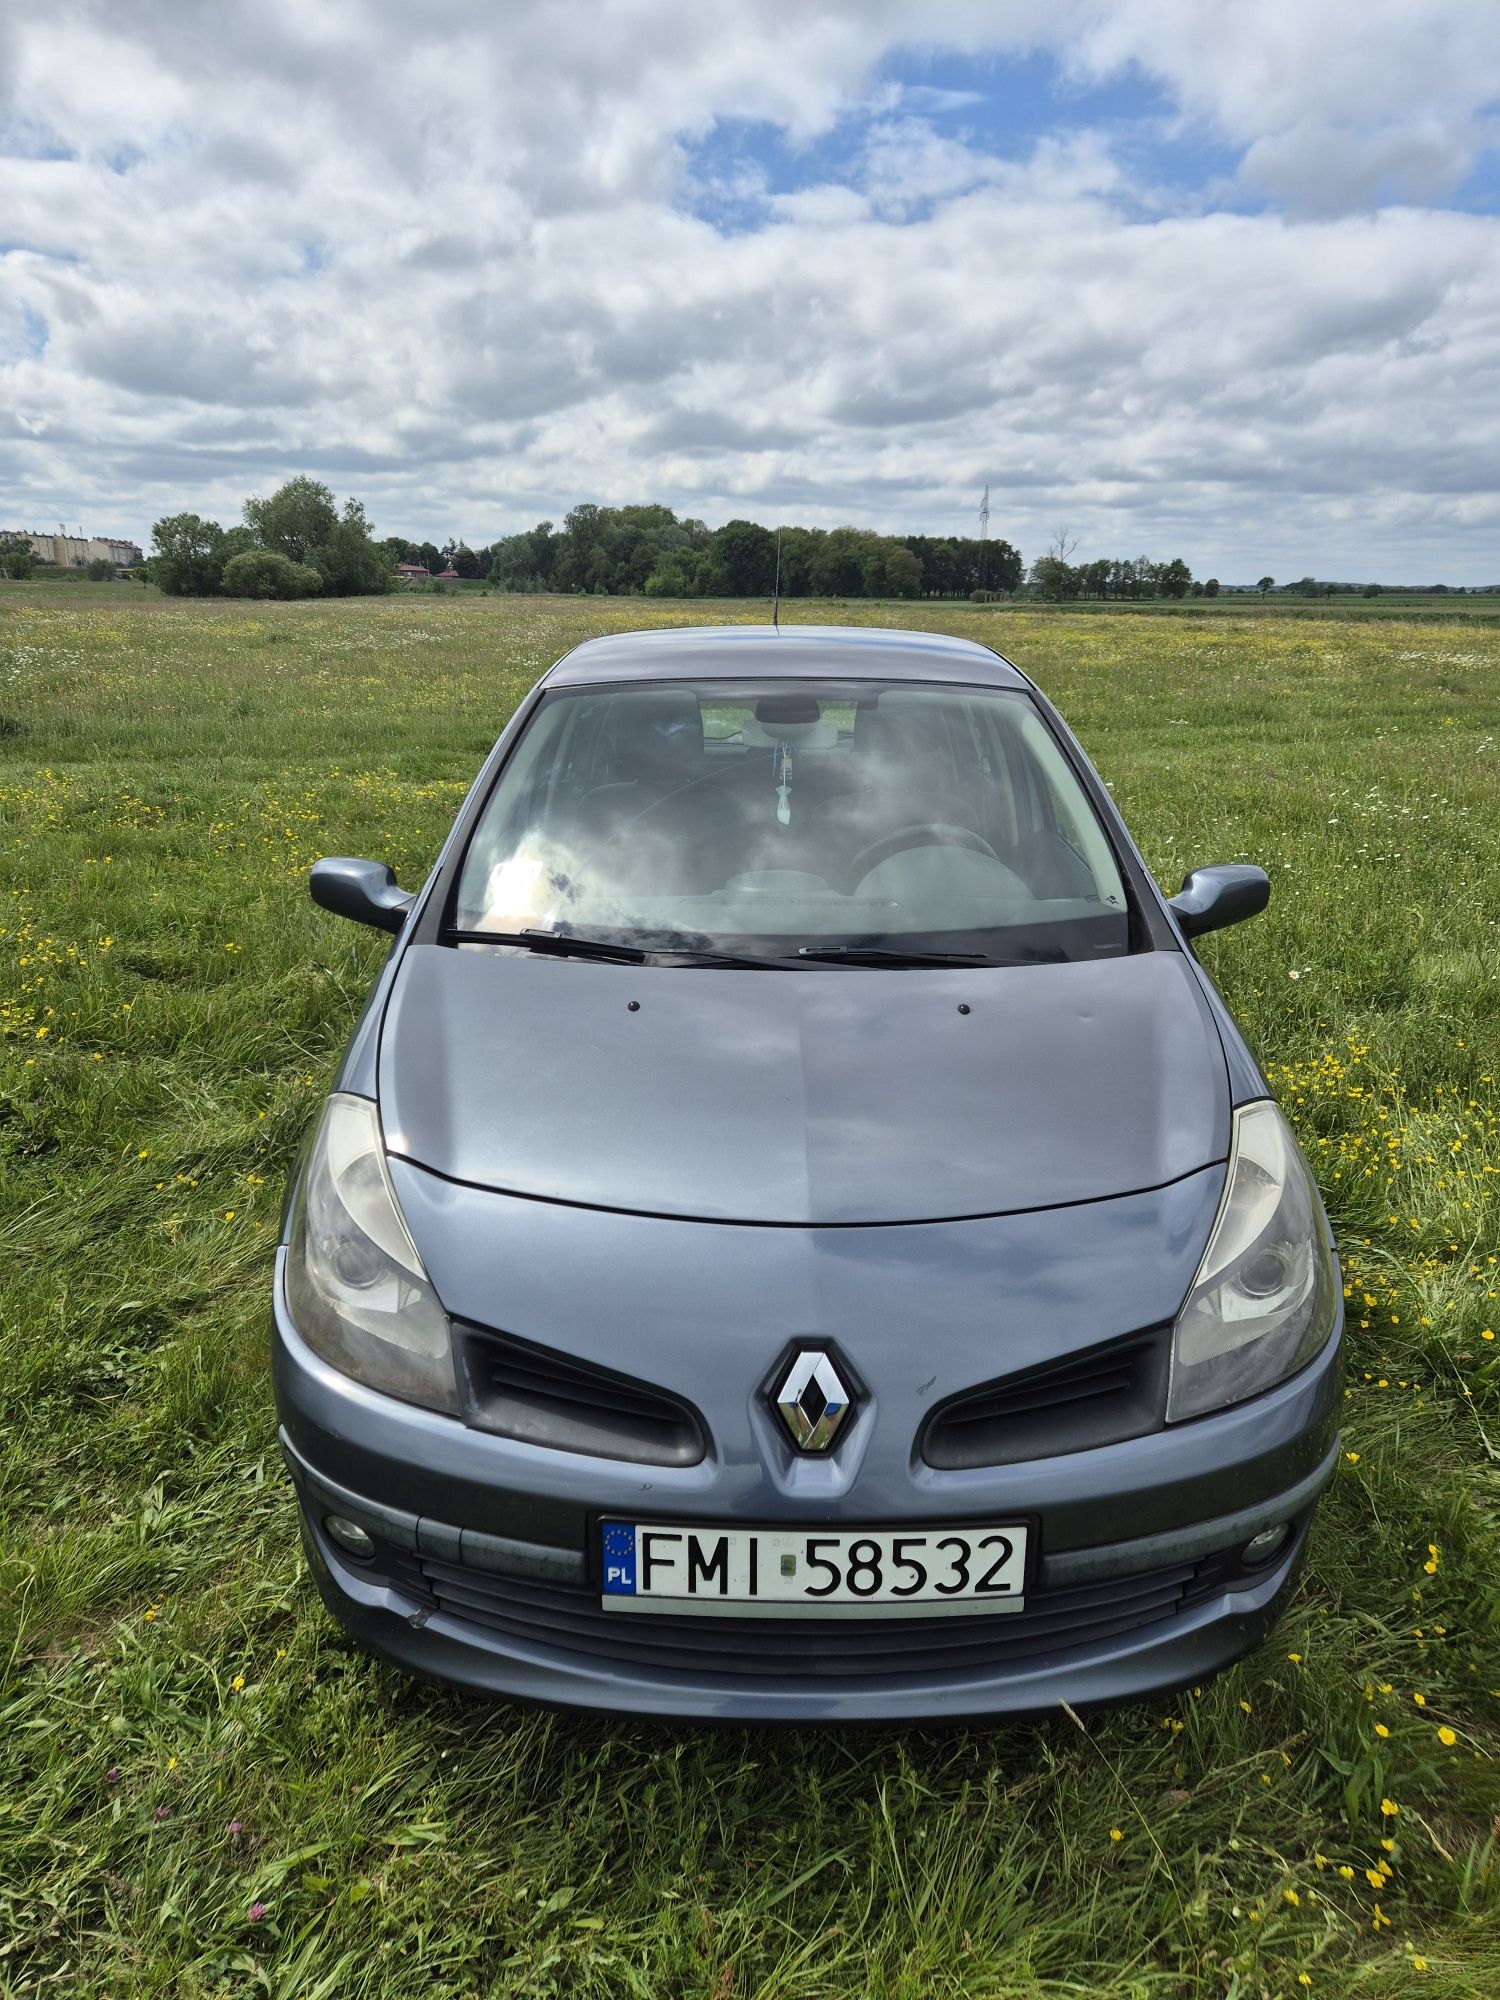 Renault Clio 3 - 1.6 - klima - 146km przebiegu - 5 drzwi